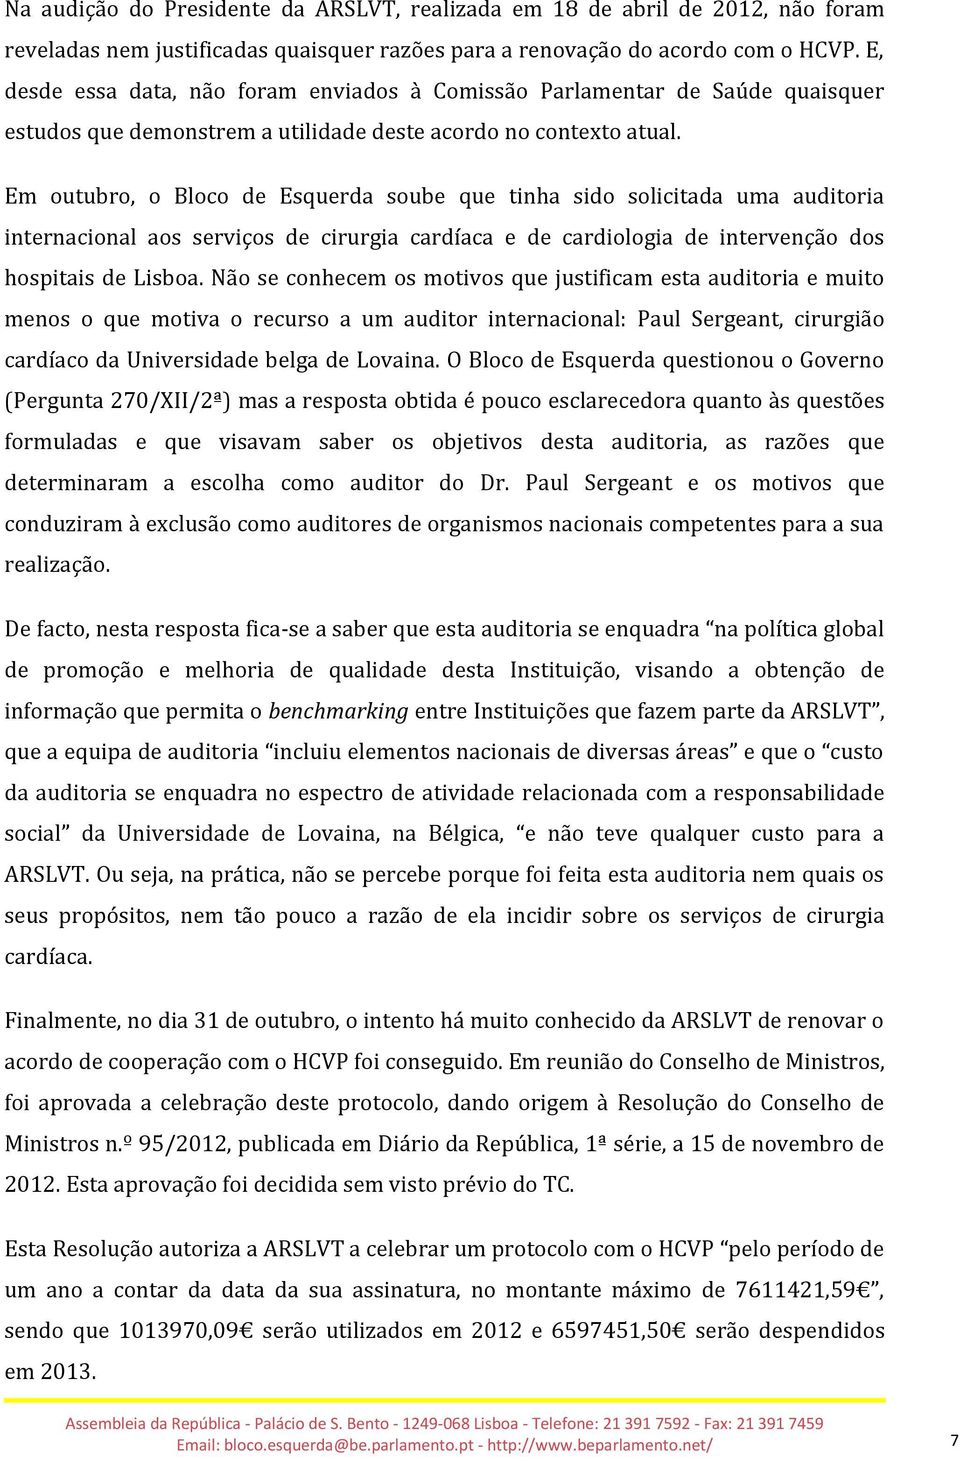 Em outubro, o Bloco de Esquerda soube que tinha sido solicitada uma auditoria internacional aos serviços de cirurgia cardíaca e de cardiologia de intervenção dos hospitais de Lisboa.